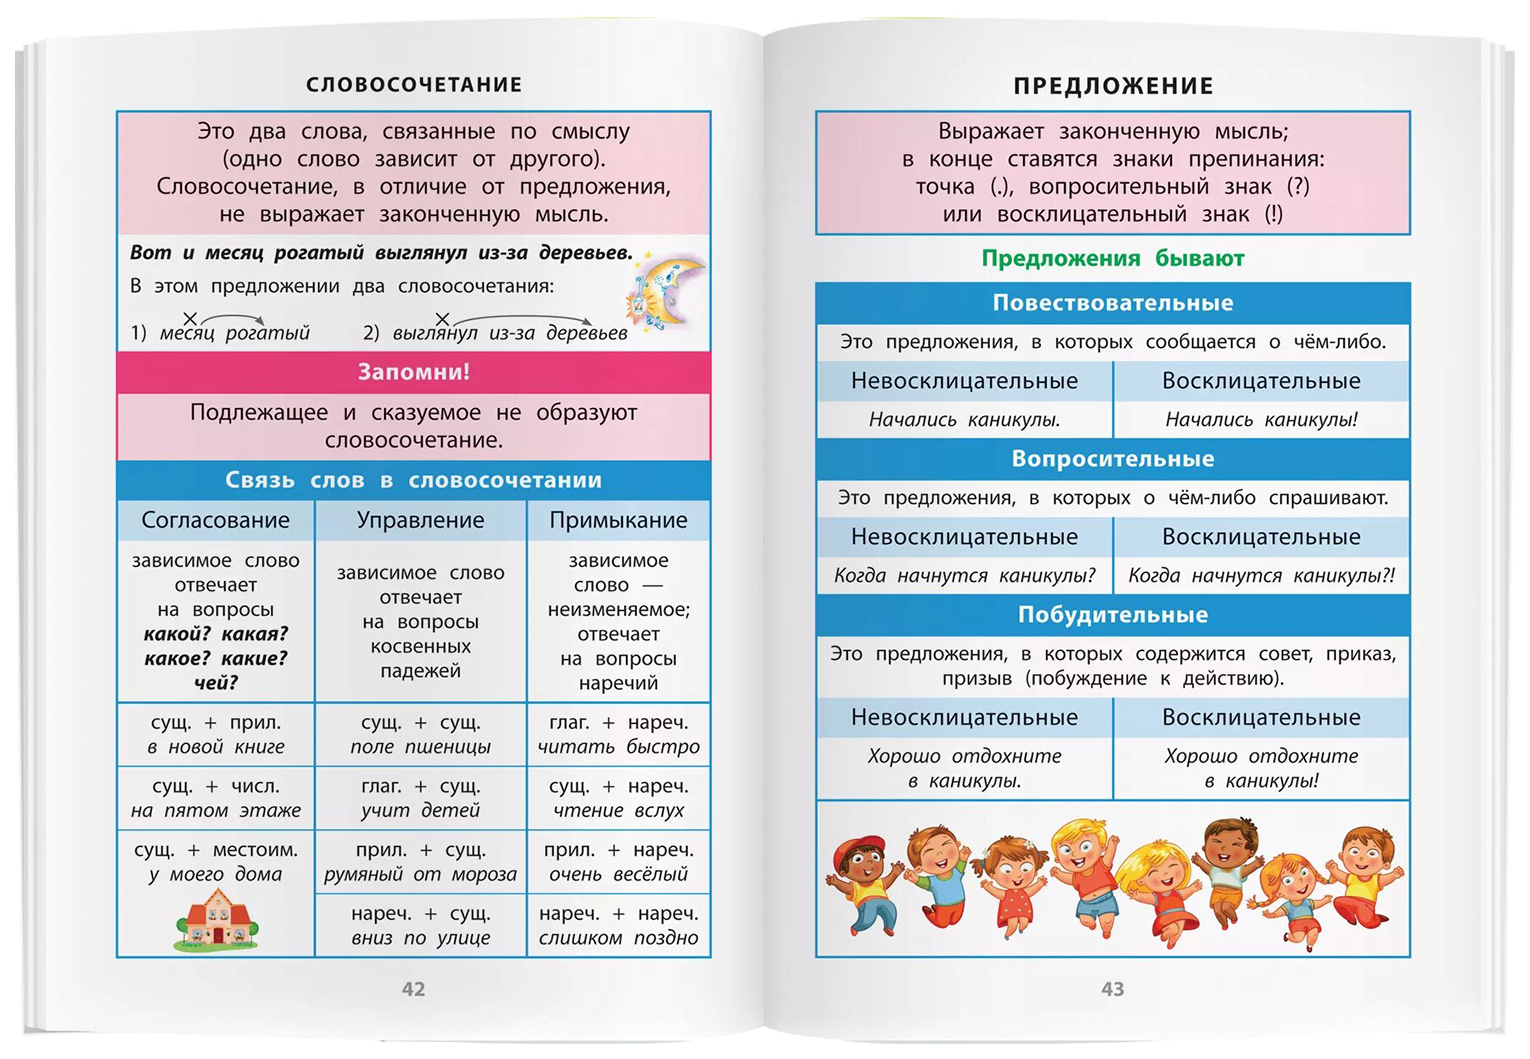 Справочник в таблицах. Русский язык. 1-4 классы